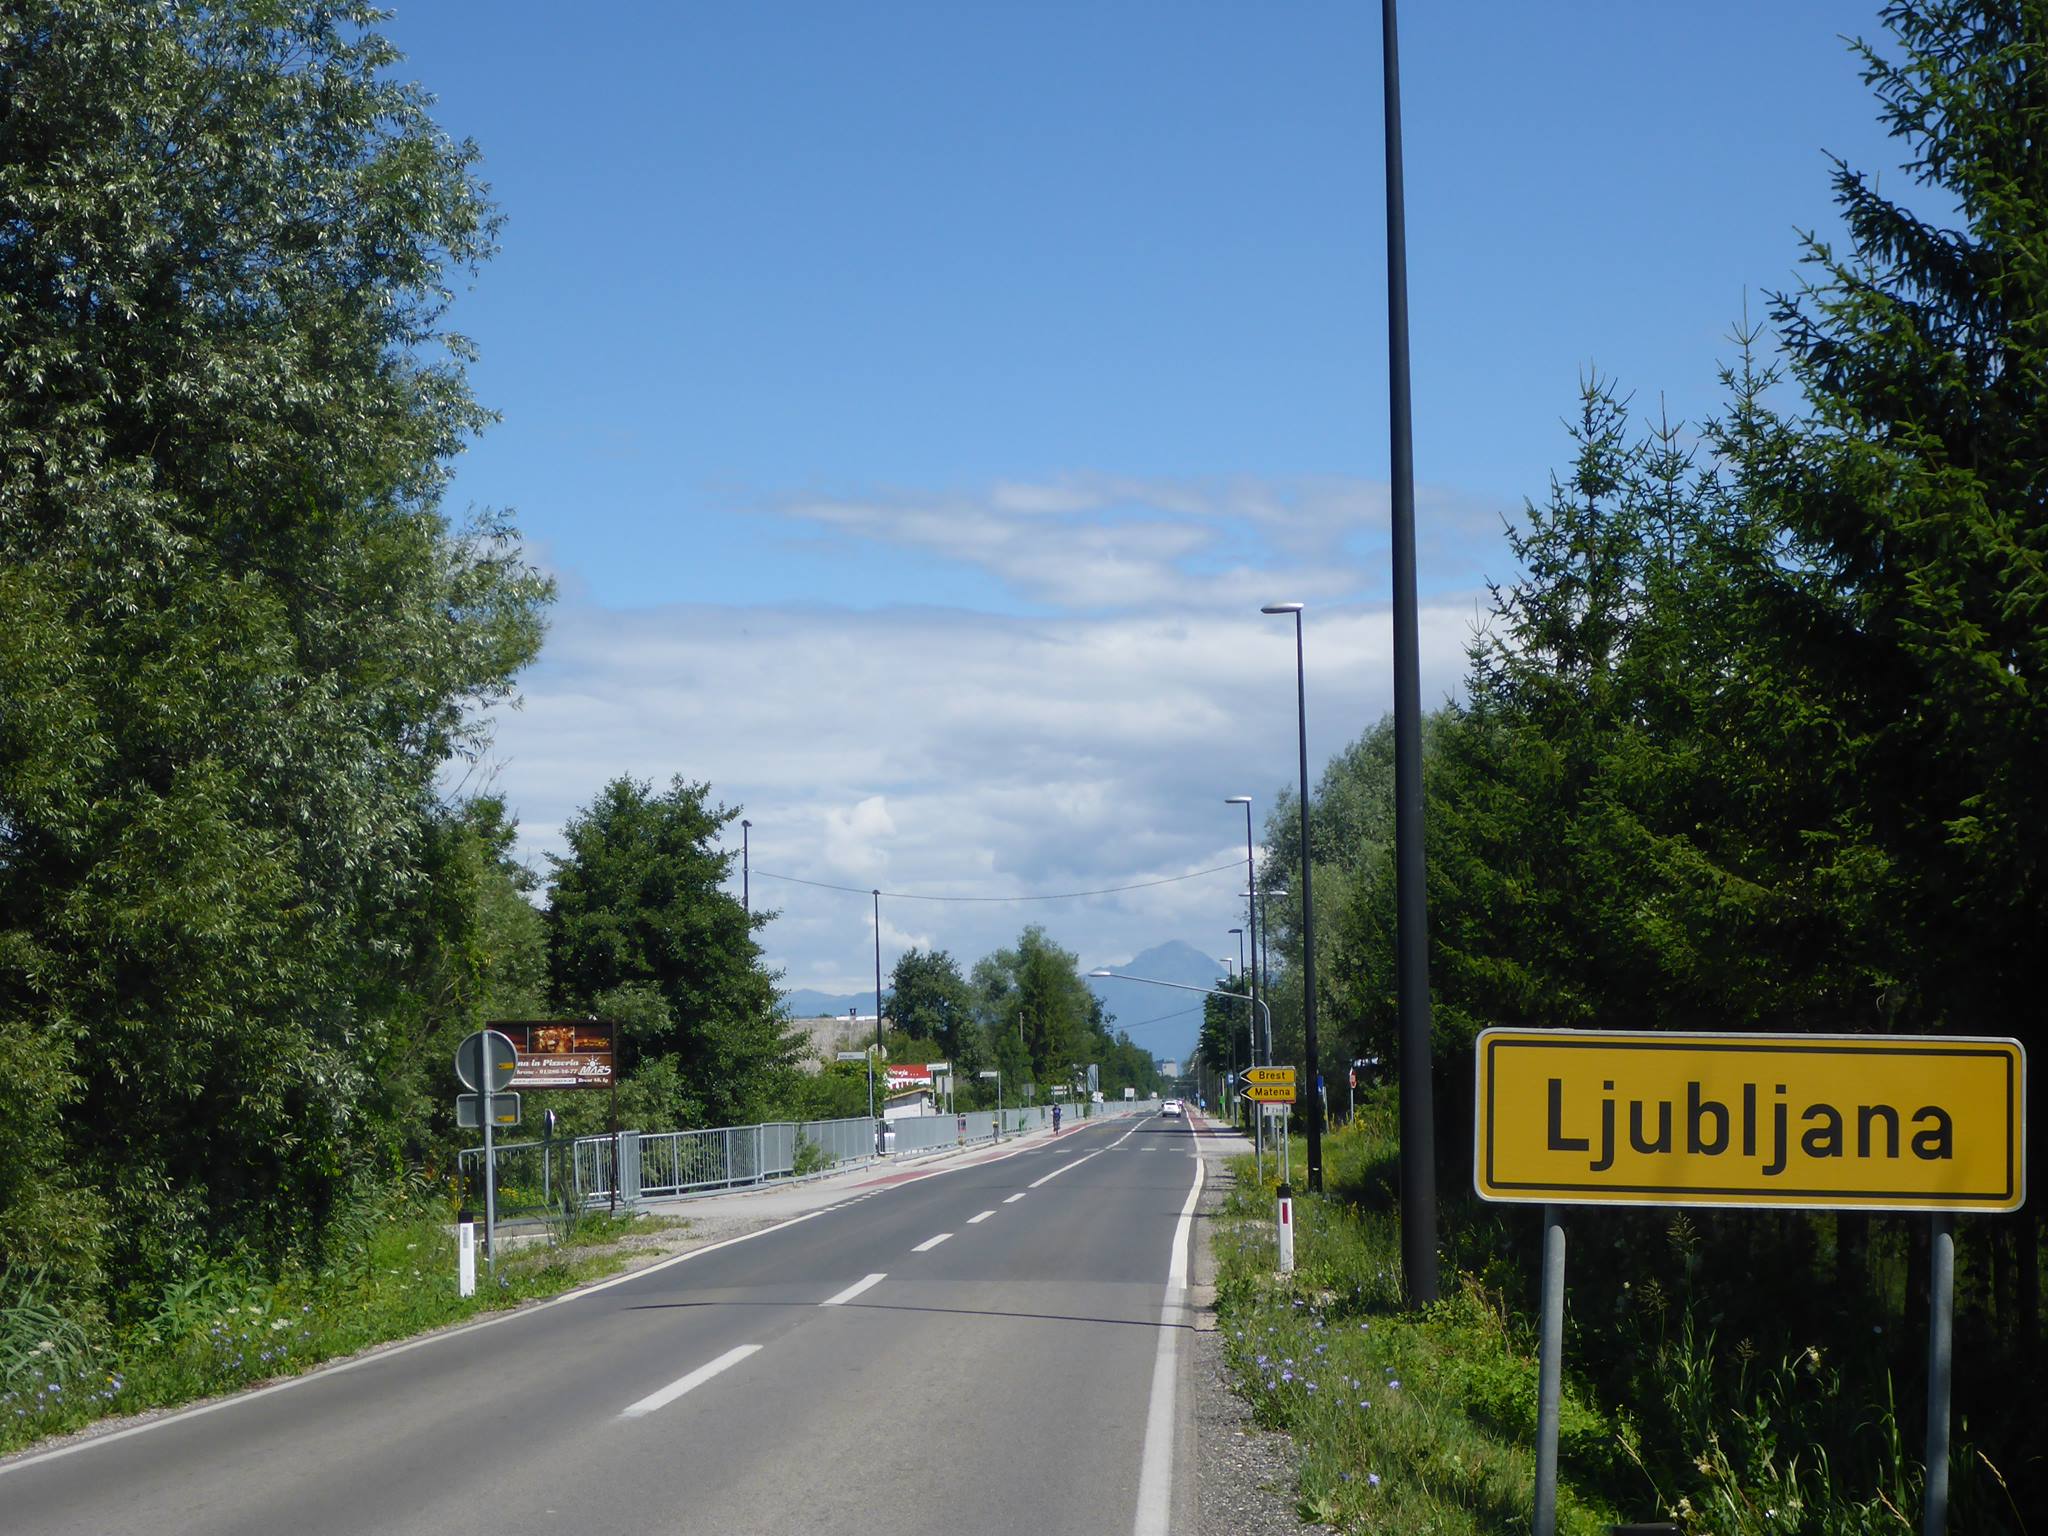 J'arrive à Ljubljana où je vais y rester finalement près de trois semaines